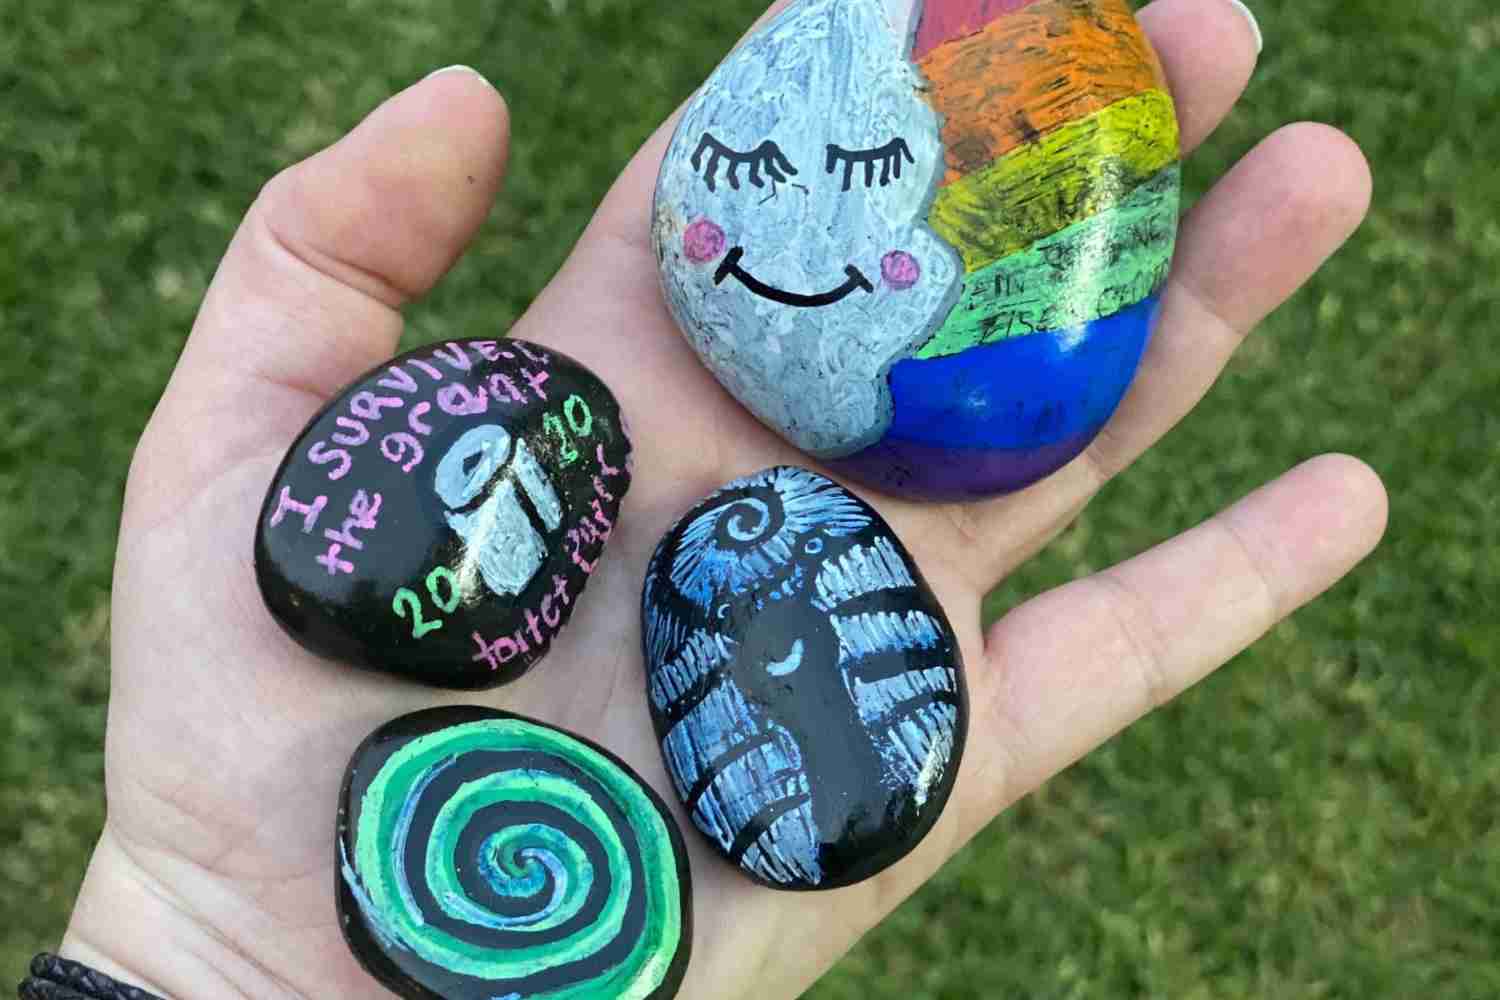 Painted rocks | Find Hidden Rocks Near You